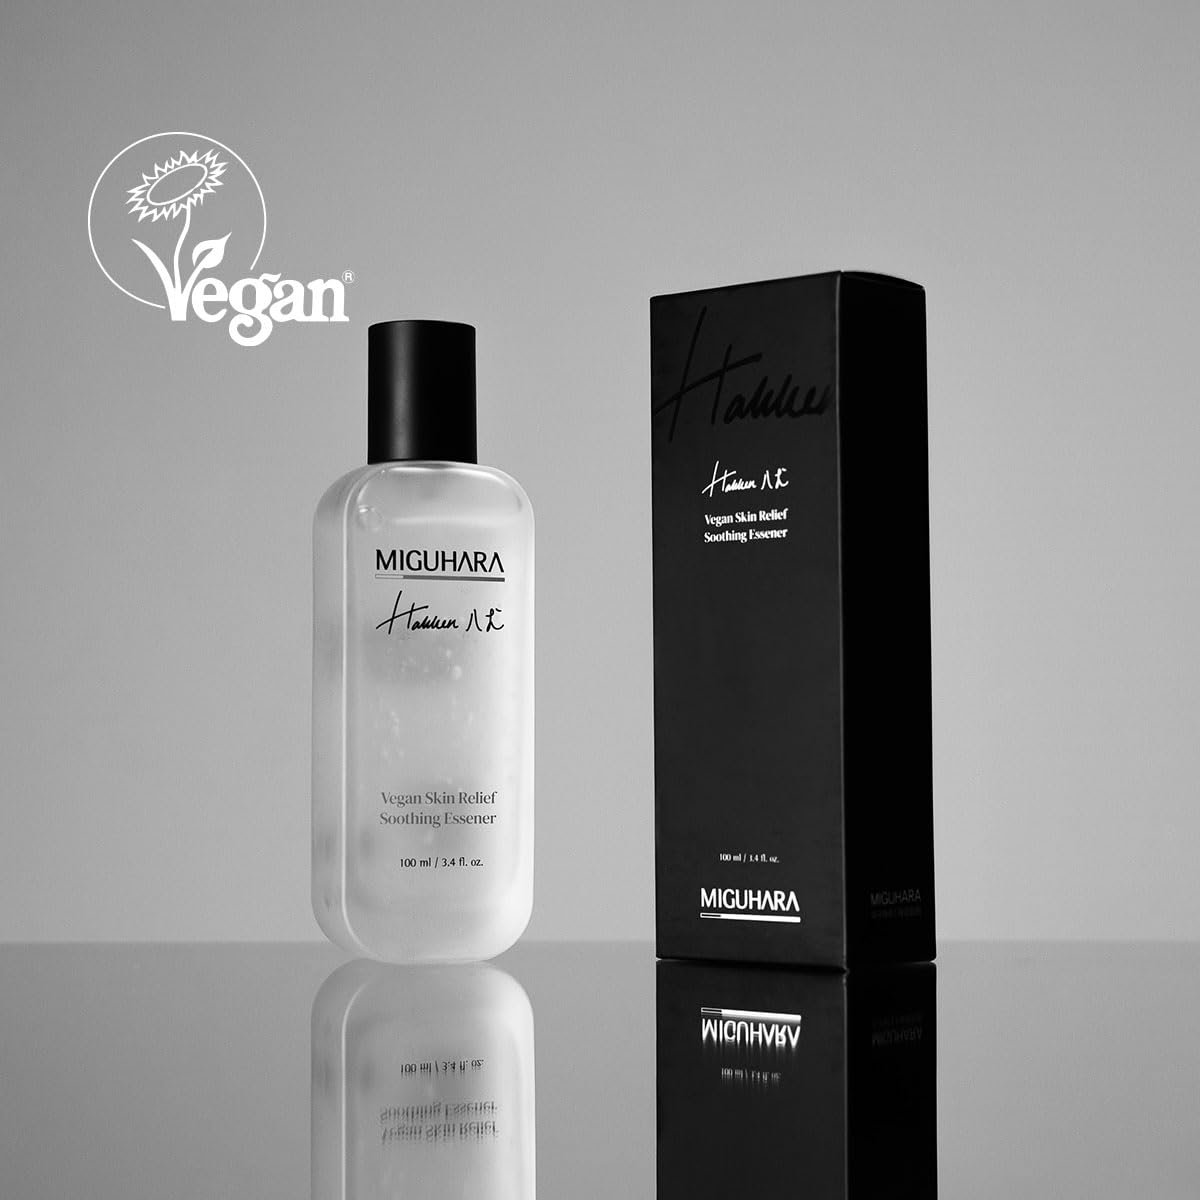 MIGUHARA Vegan Skin Relief Soothing Essener 100ml